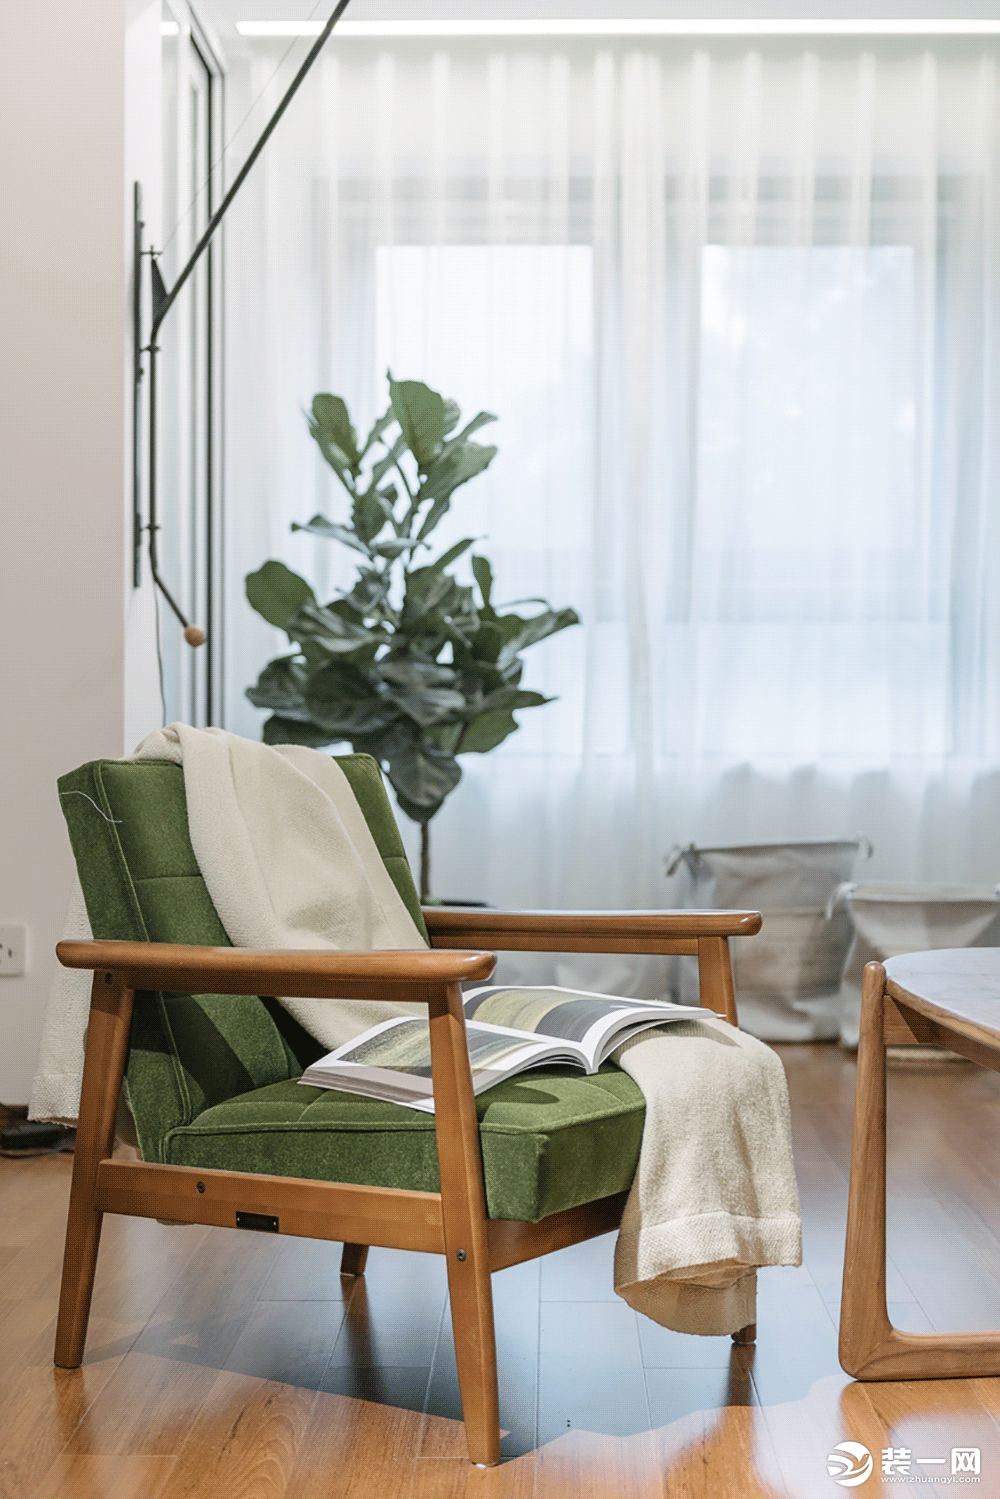 小巧的沙发搭上绿色丝绒垫，点缀了空间，也提升了活力色调。